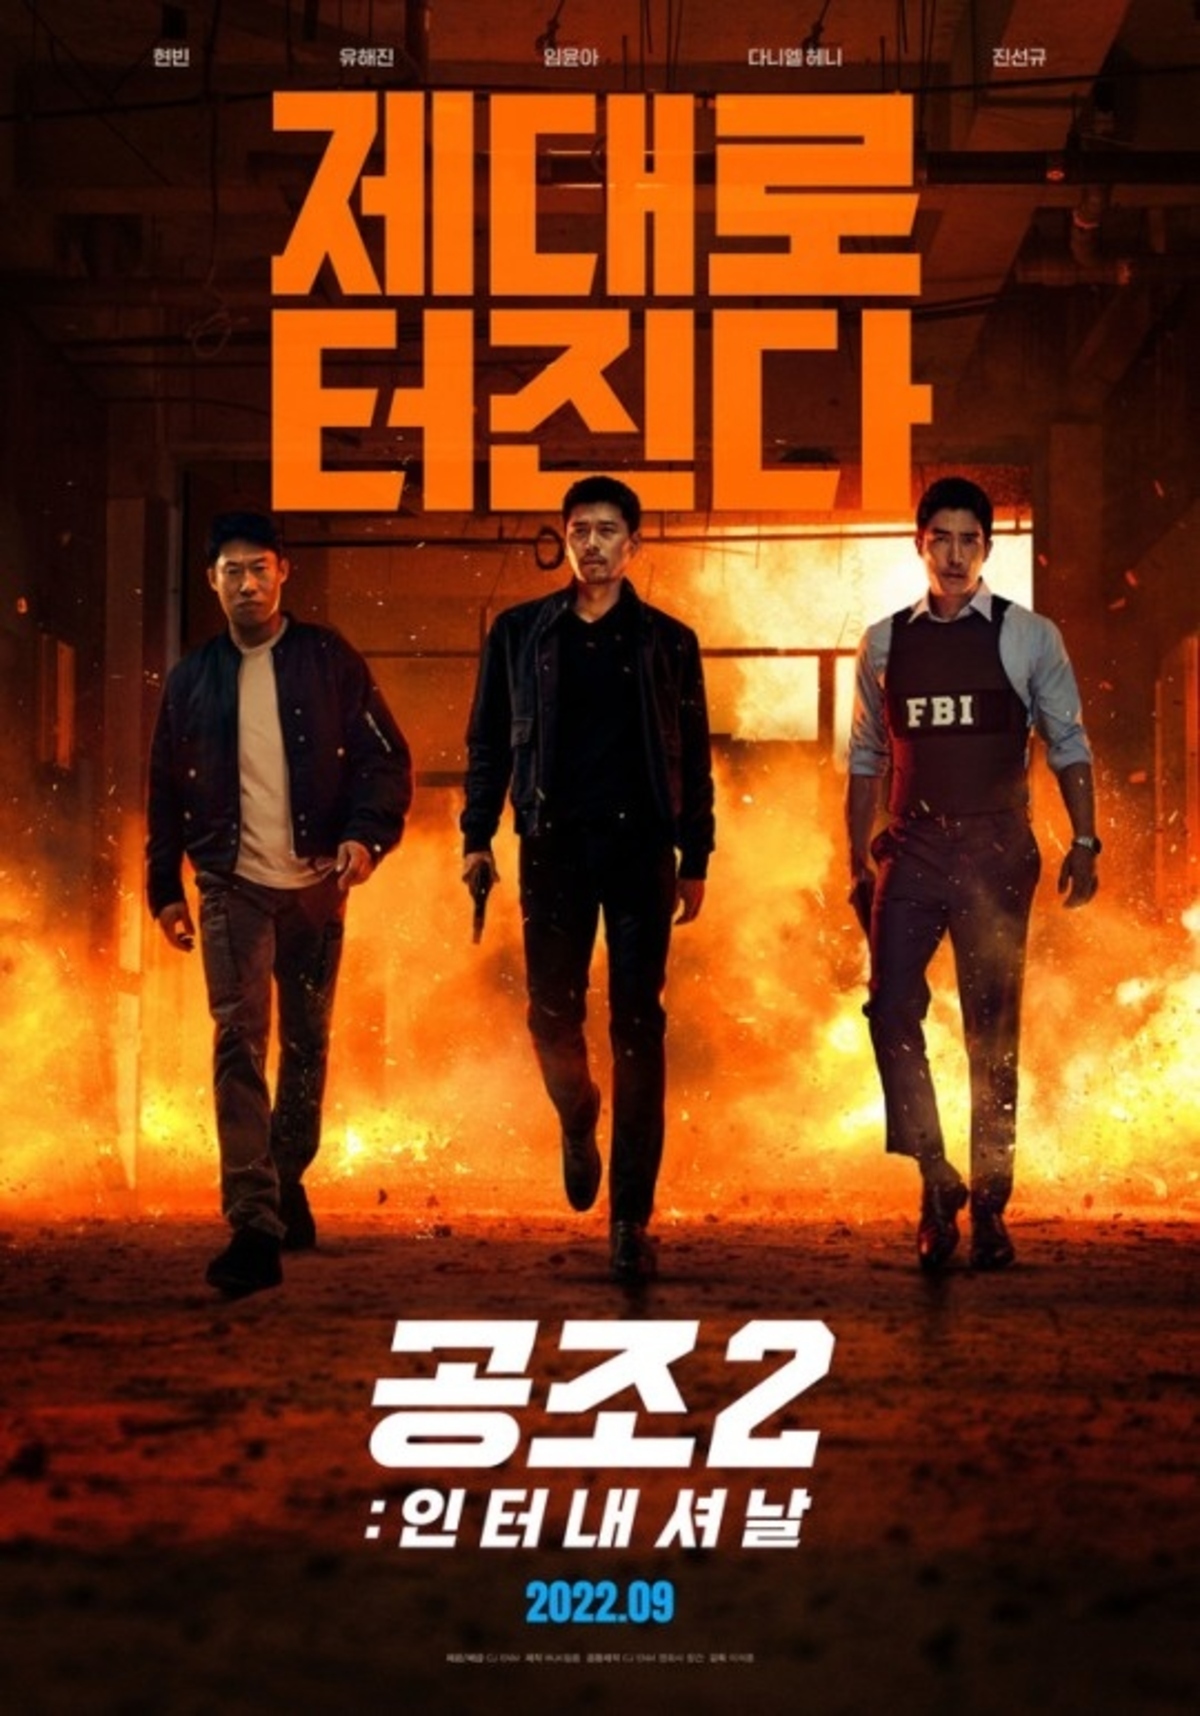 開店祝い 貴重 韓国映画 コンフィデンシャル 共助 オリジナル ポスター 